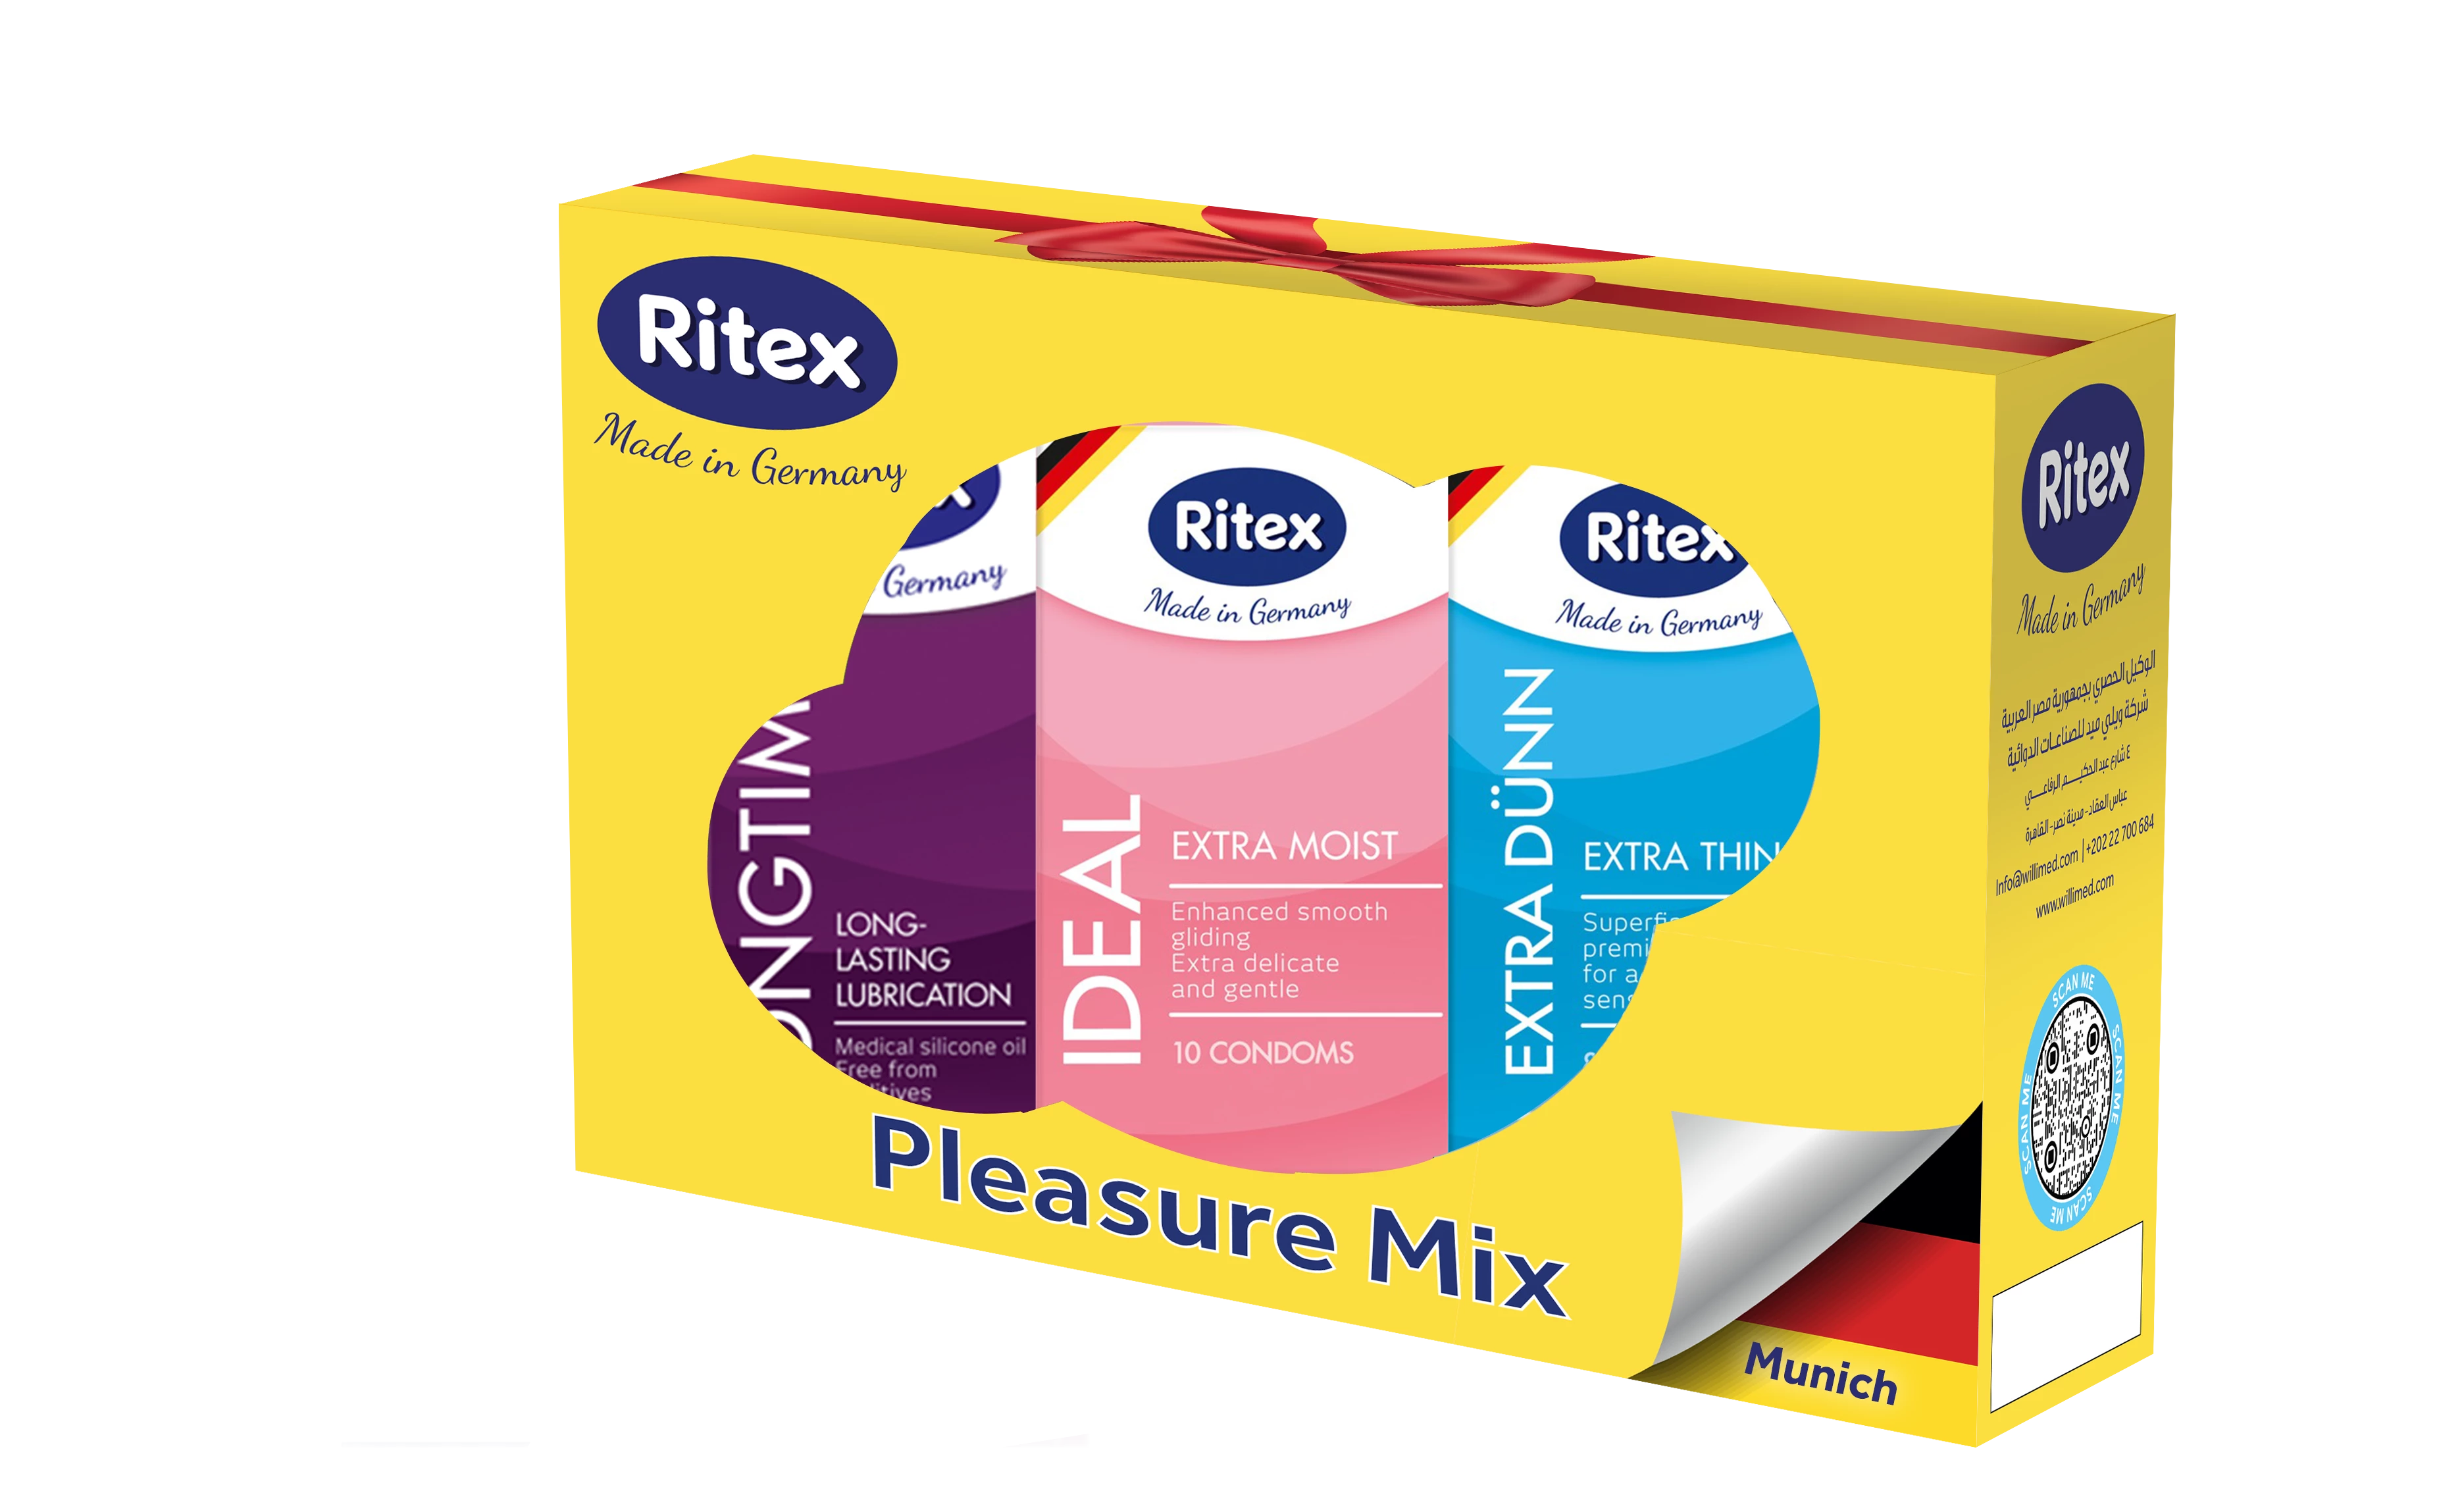 Ritex Pleasure Mix (Munich)